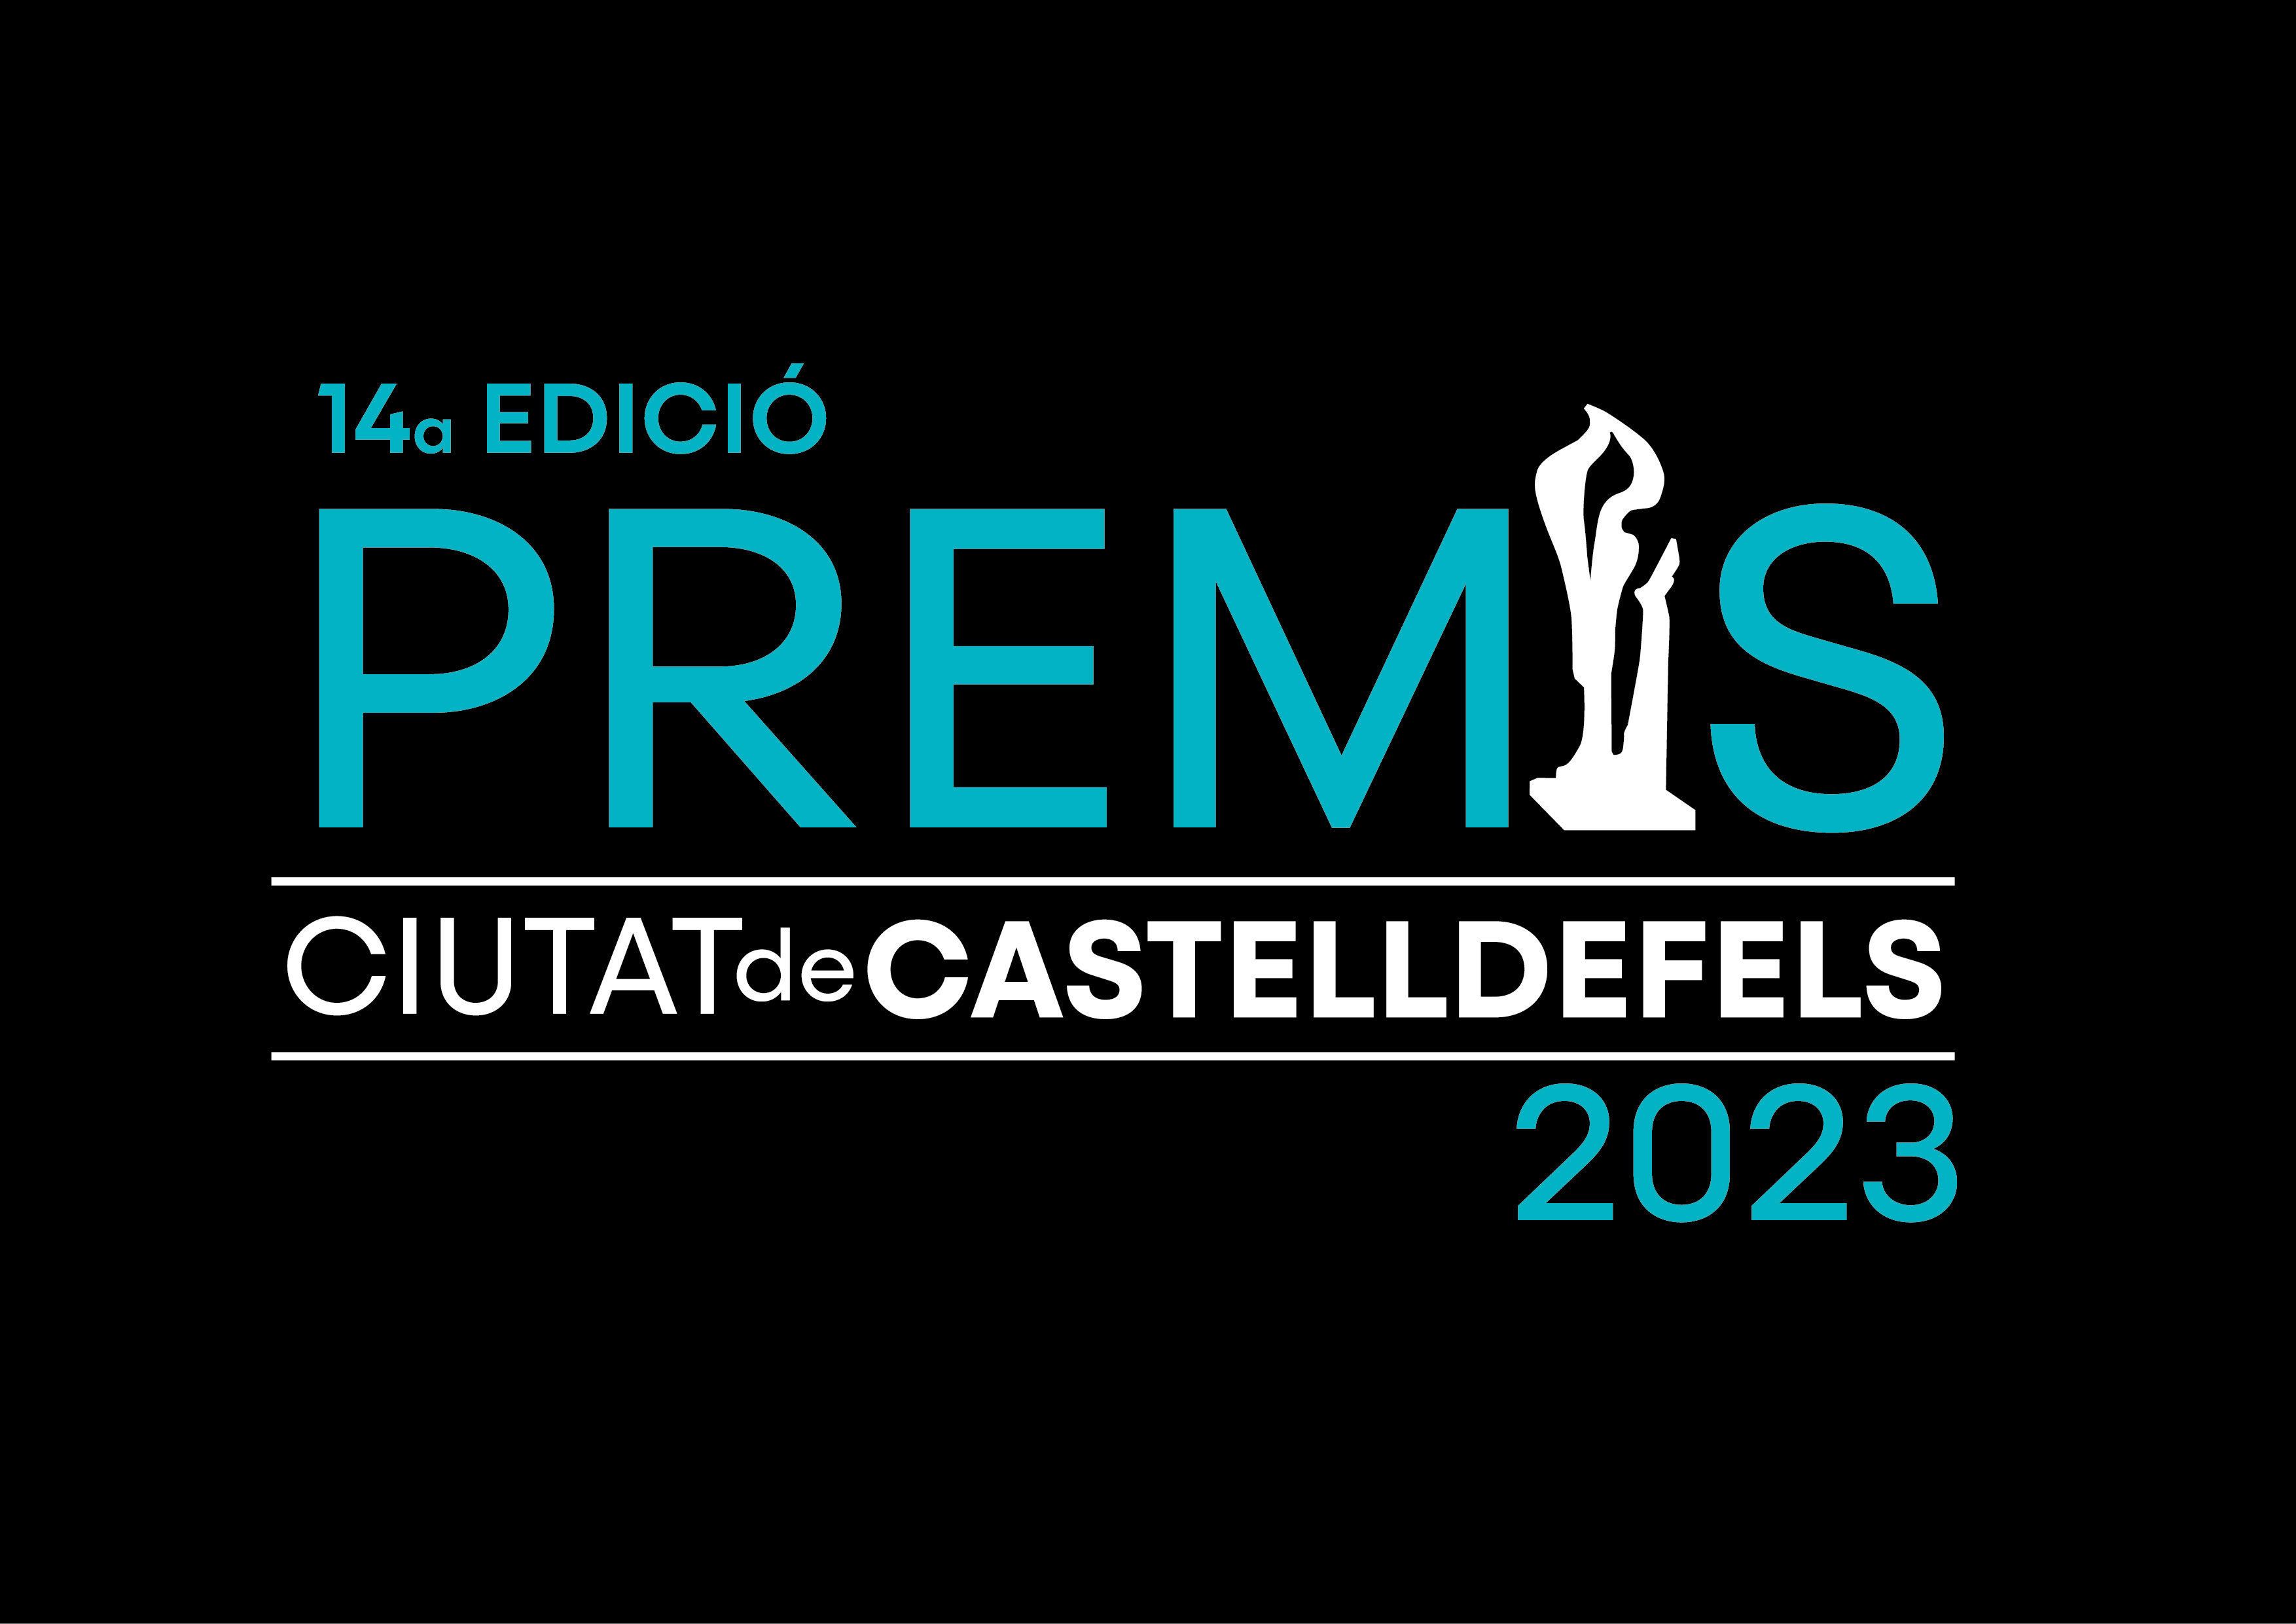 Premis Ciutat de Castelldefels 2023